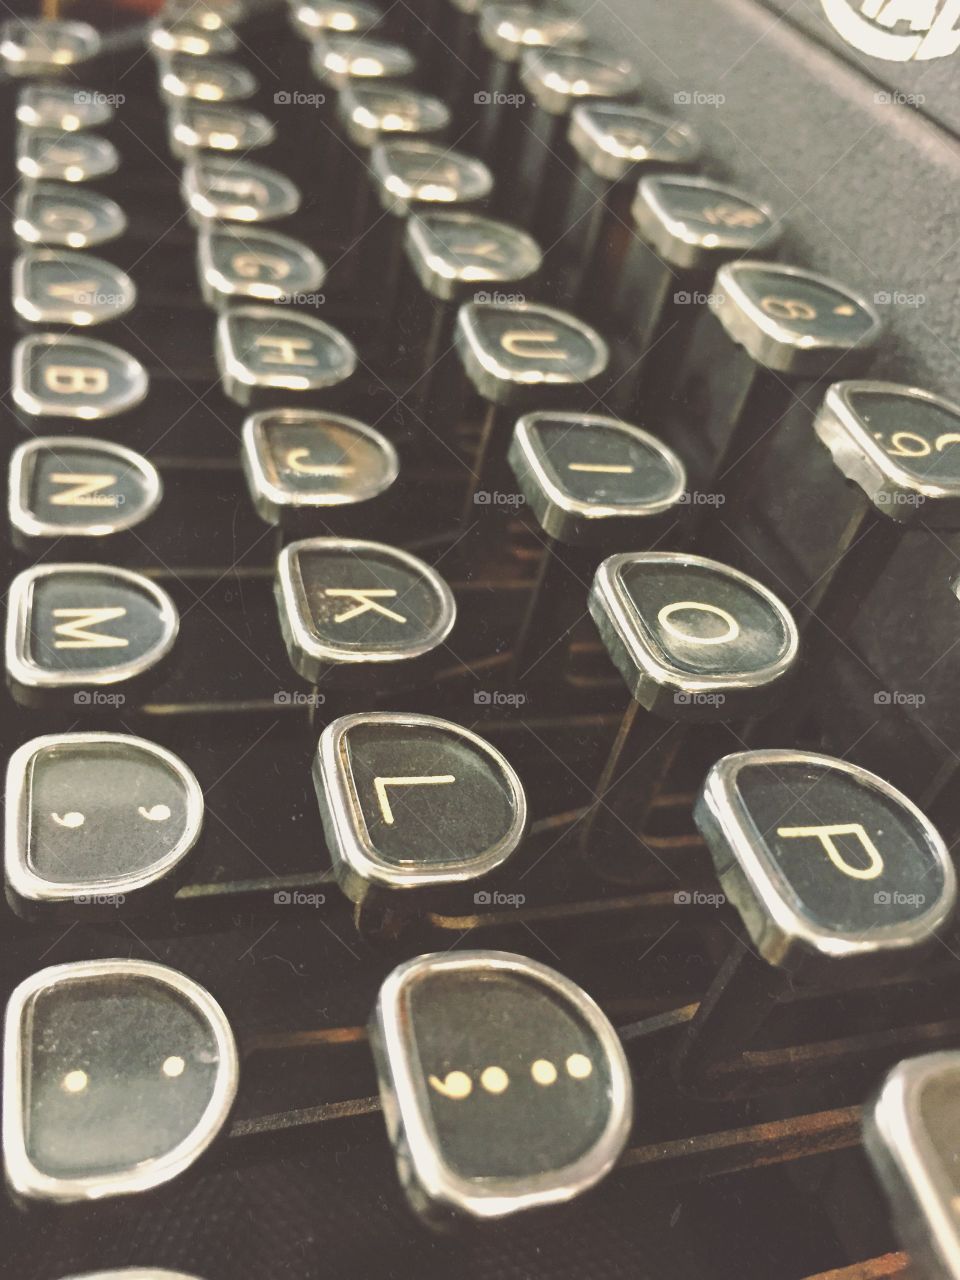 Typewriter. Taken at an old vintage shop in Dallas, Tx